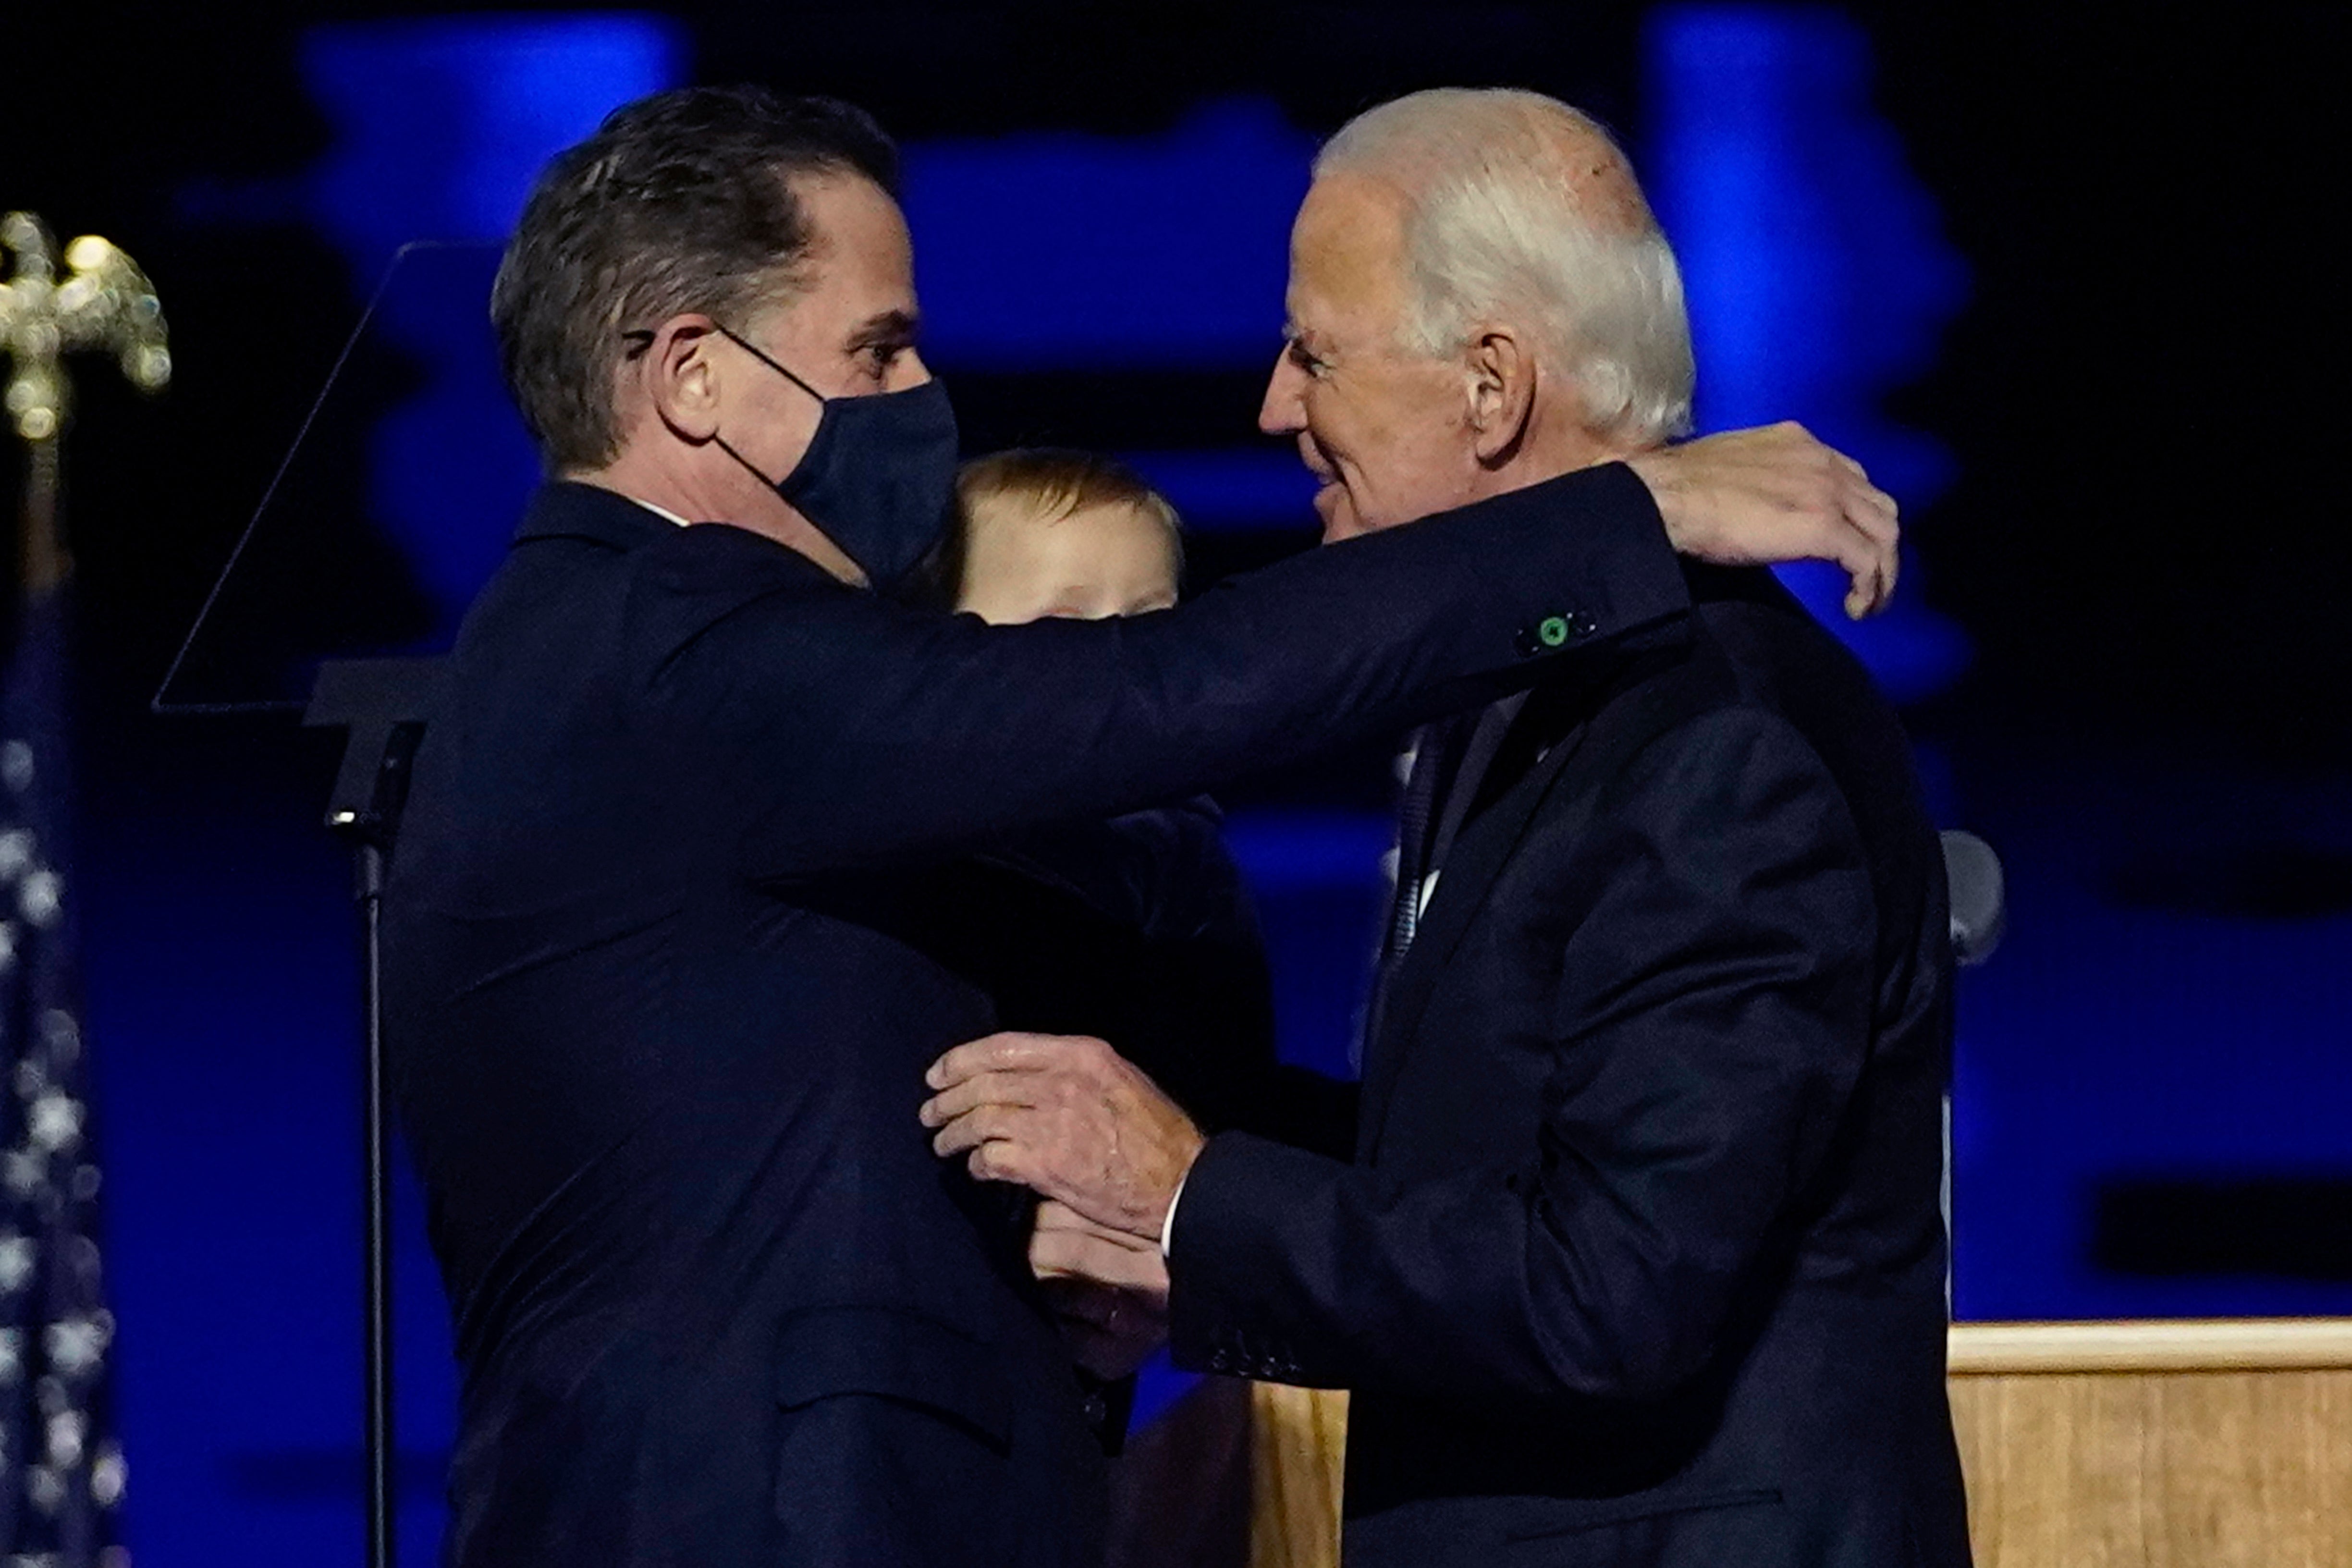 ARCHIVO - En esta fotografía de archivo del 7 de noviembre de 2020, el presidente electo Joe Biden, a la derecha, intercambia un abrazo con su hijo Hunter Biden, en Wilmington, Delaware.&nbsp;